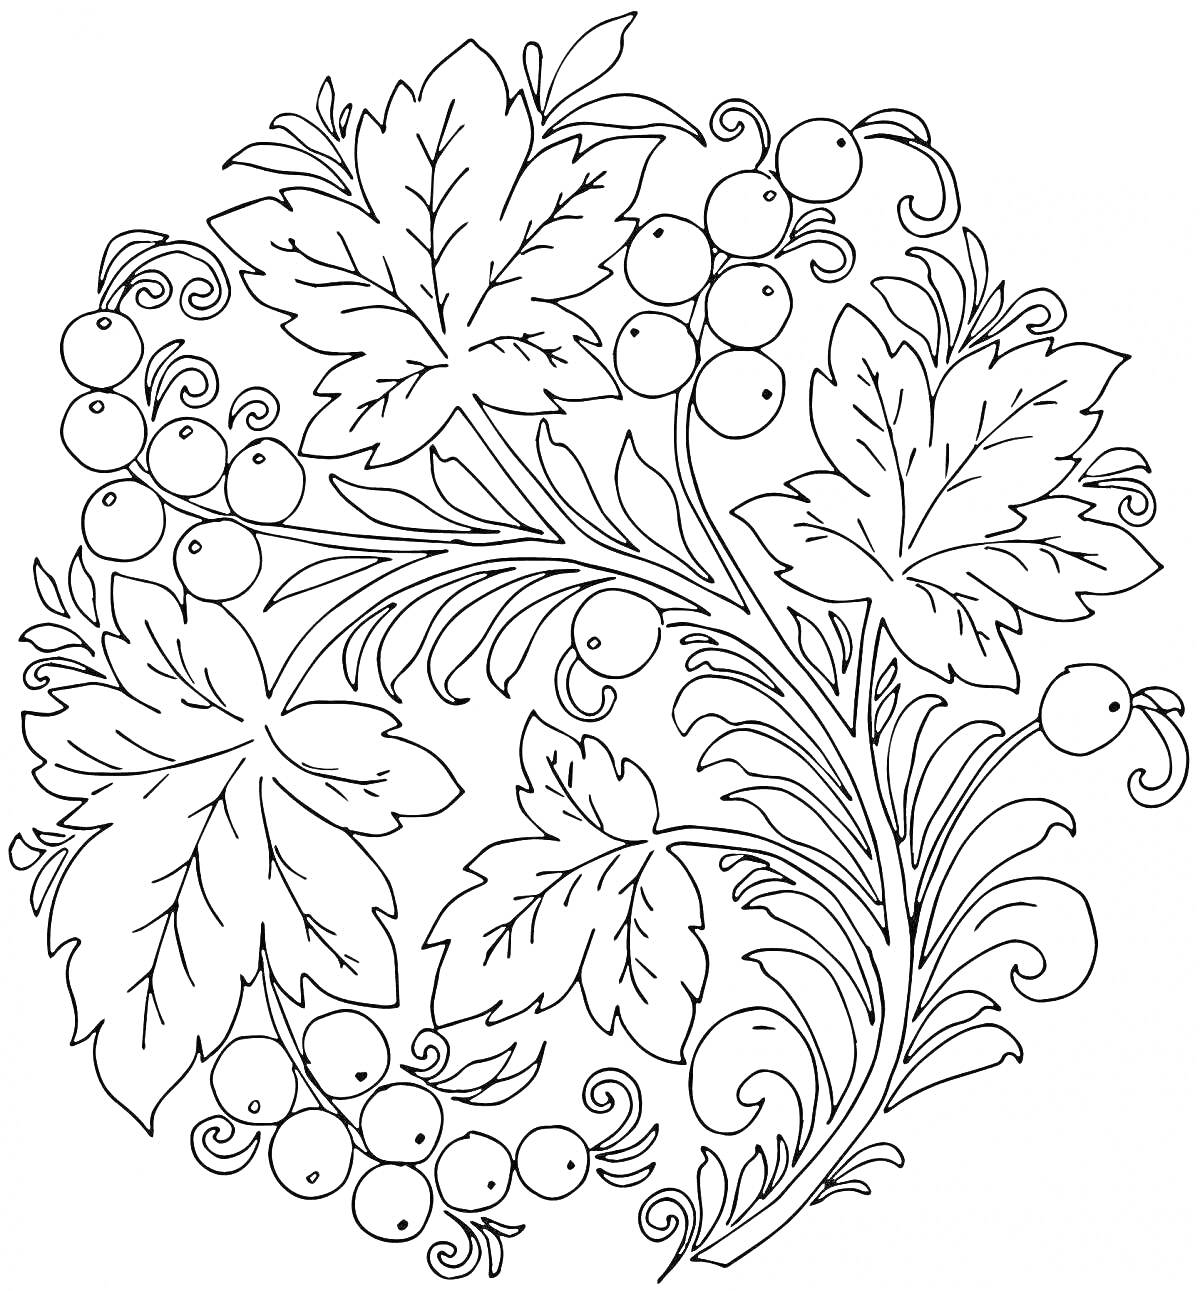 Хохлома роспись с листьями и ягодами